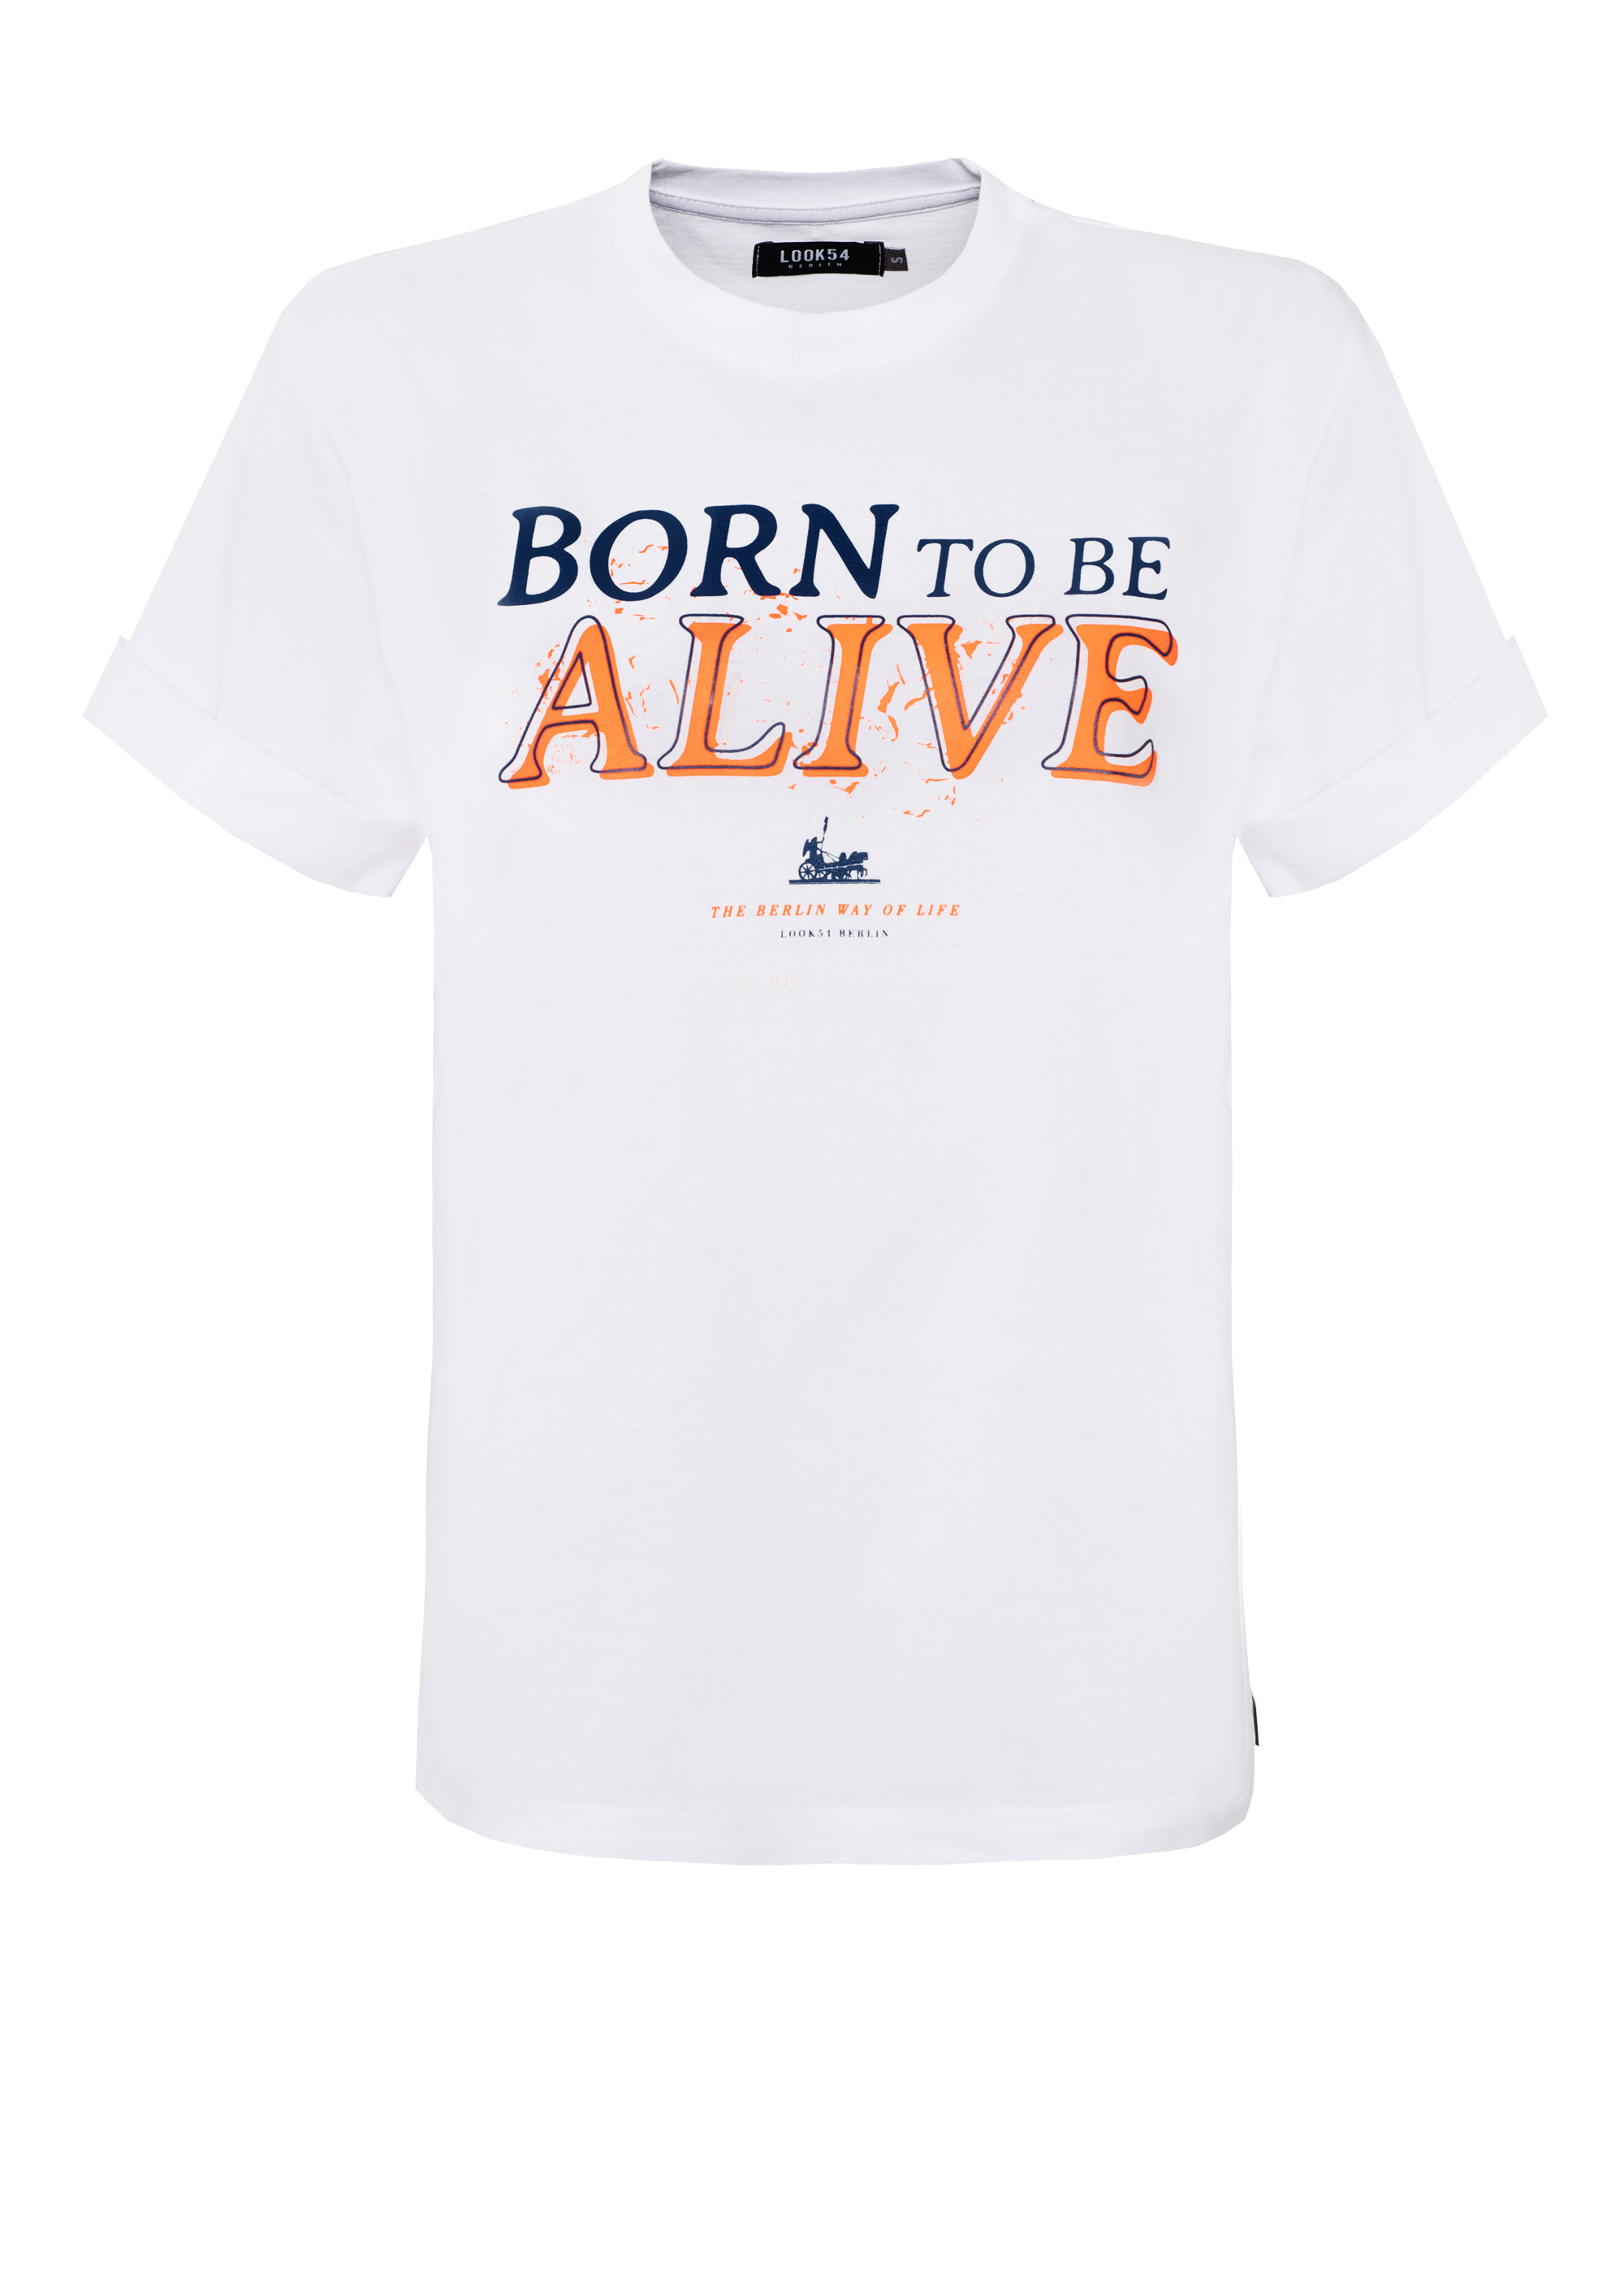 Born to be alive Heavy Duty Shirt